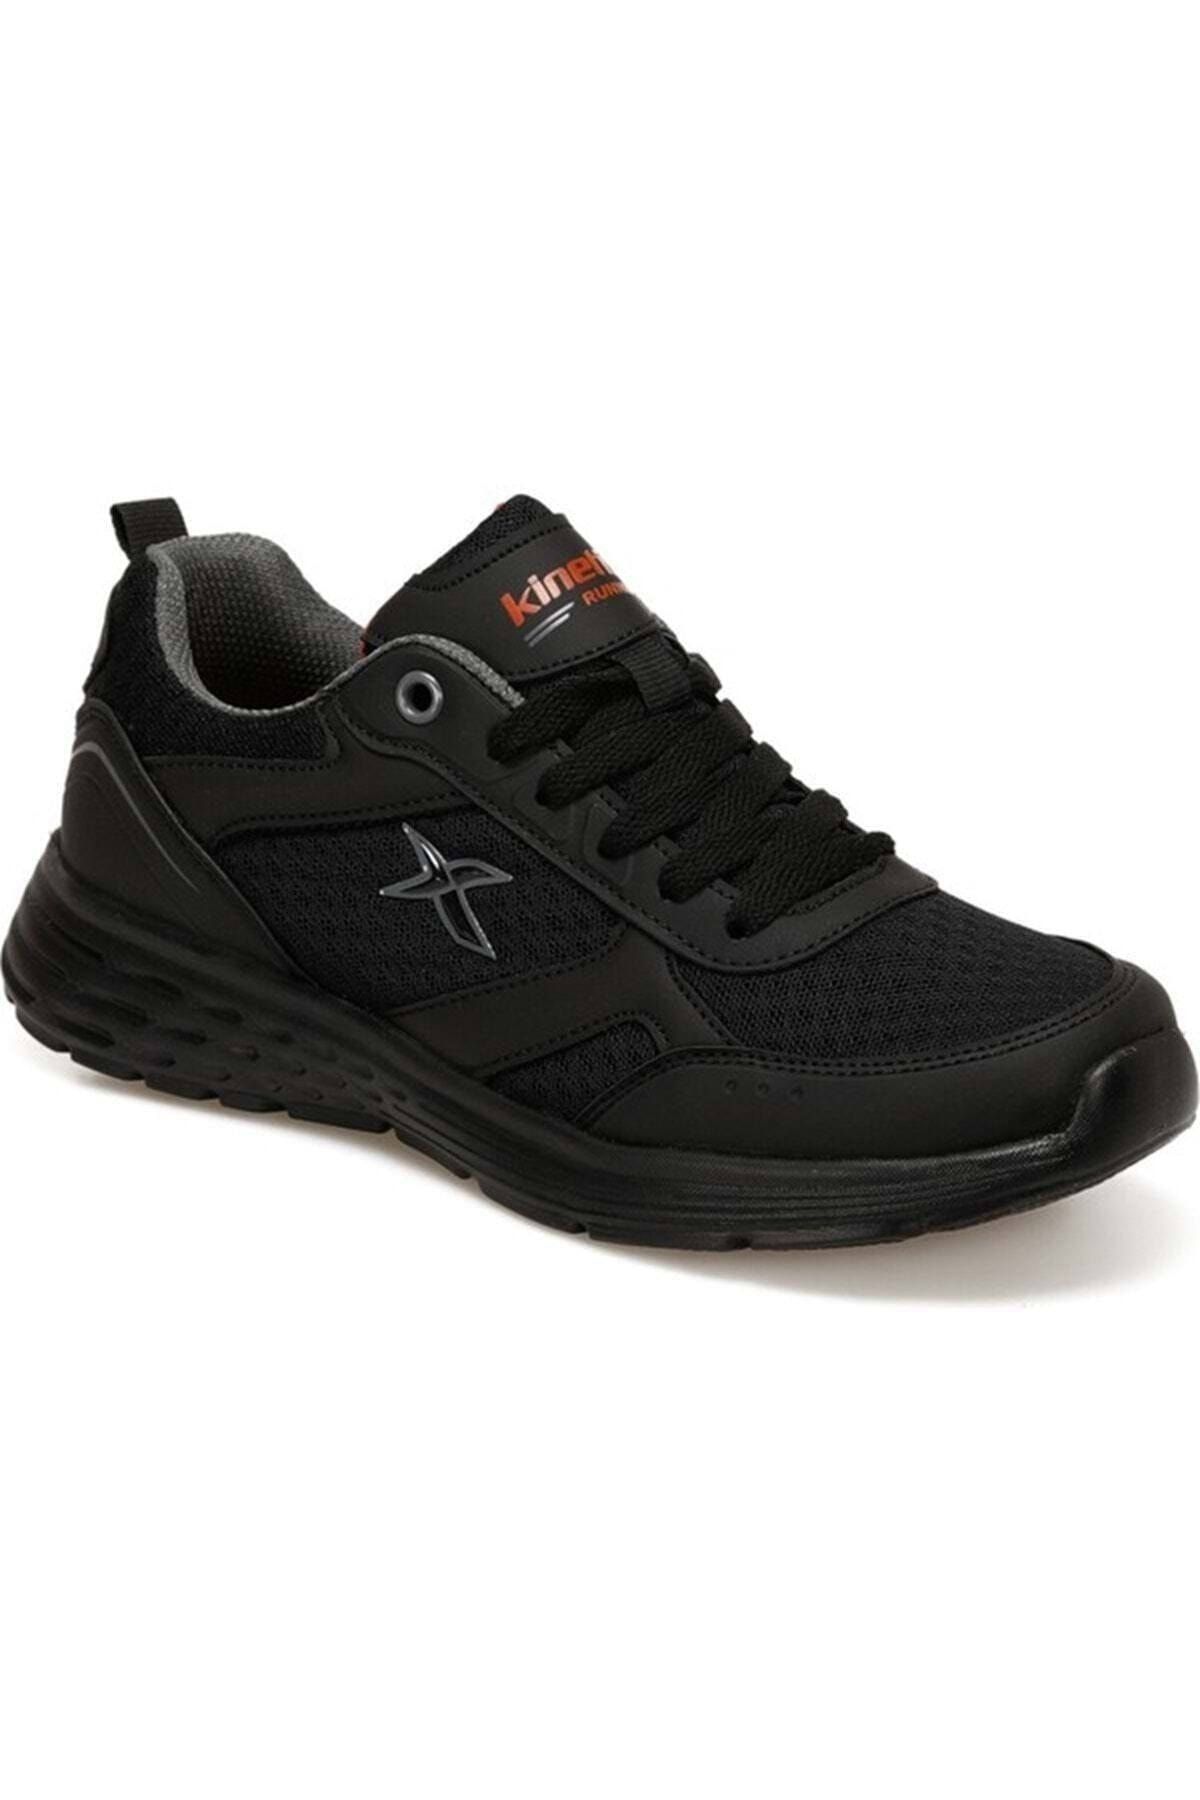 Kinetix Apex Koşu/antrenman Ayakkabısı